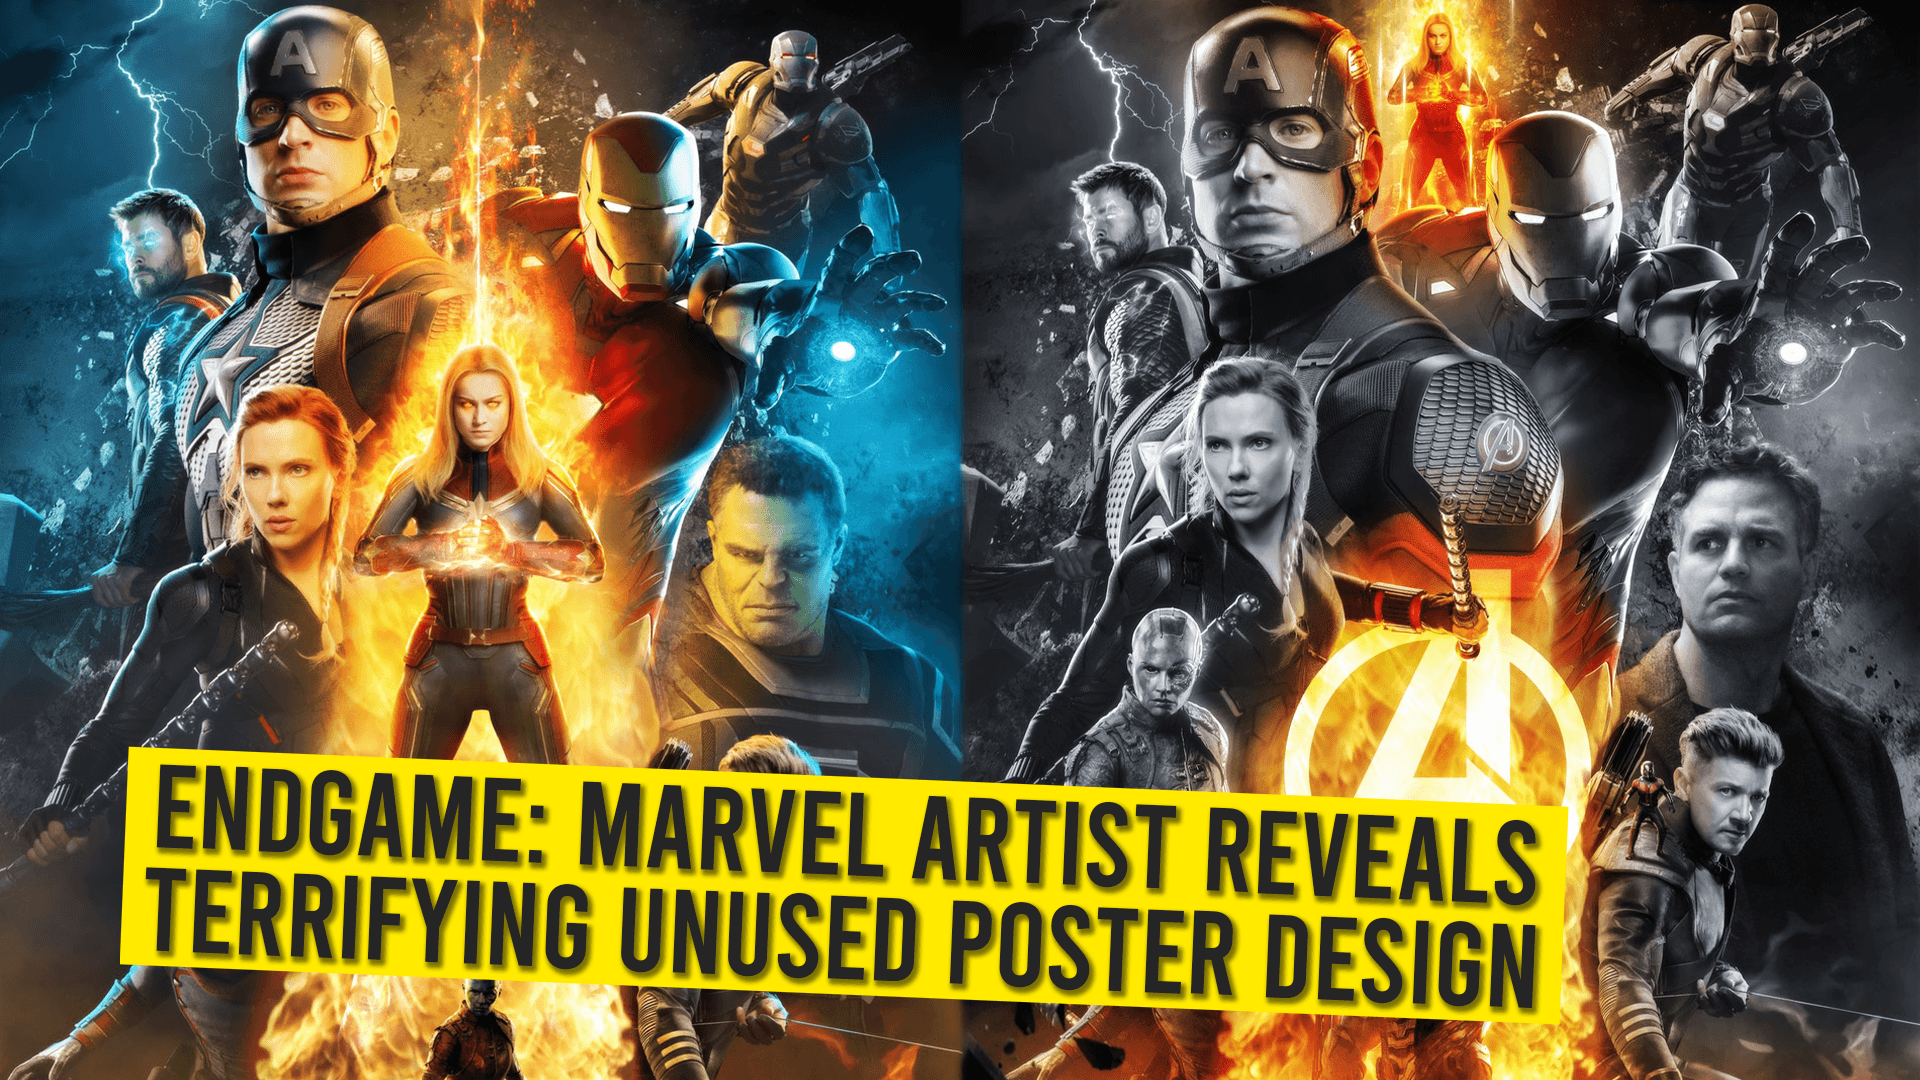 Endgame: Marvel Artist Reveals Terrifying Unused Poster Design